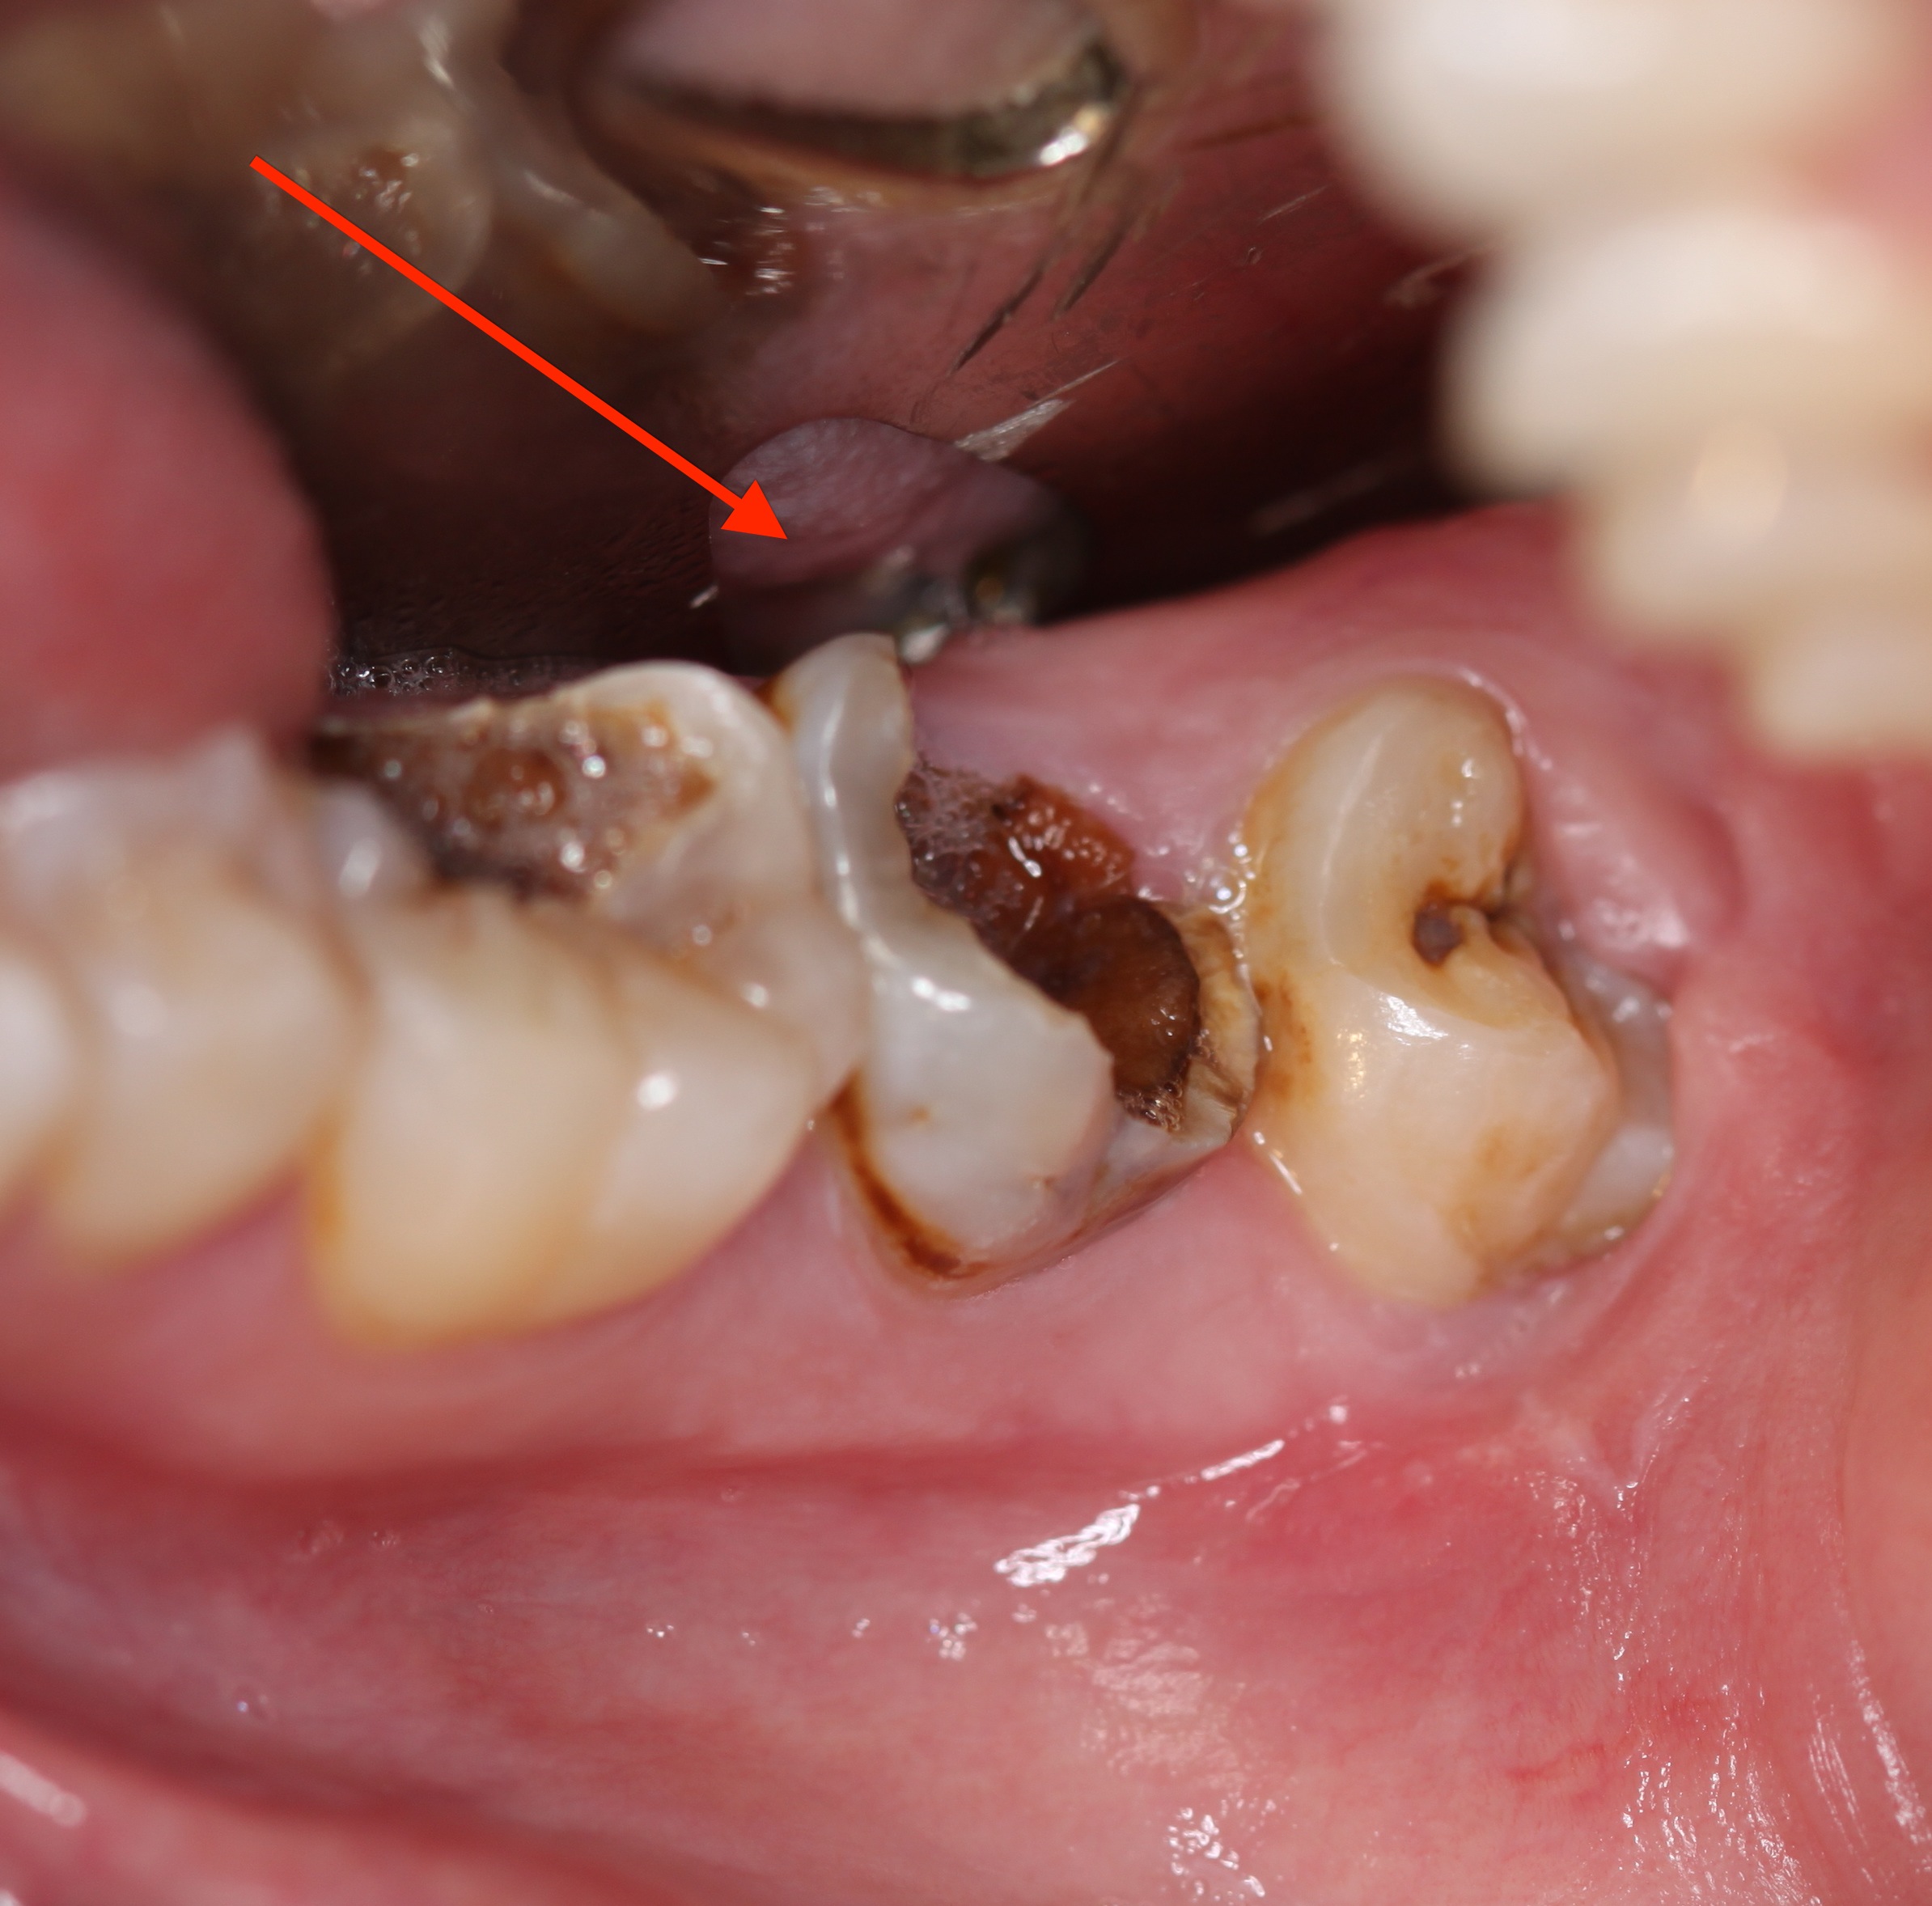 Nếu không điều trị kịp thời, bạn có thể bị mất răng vì viêm tủy 